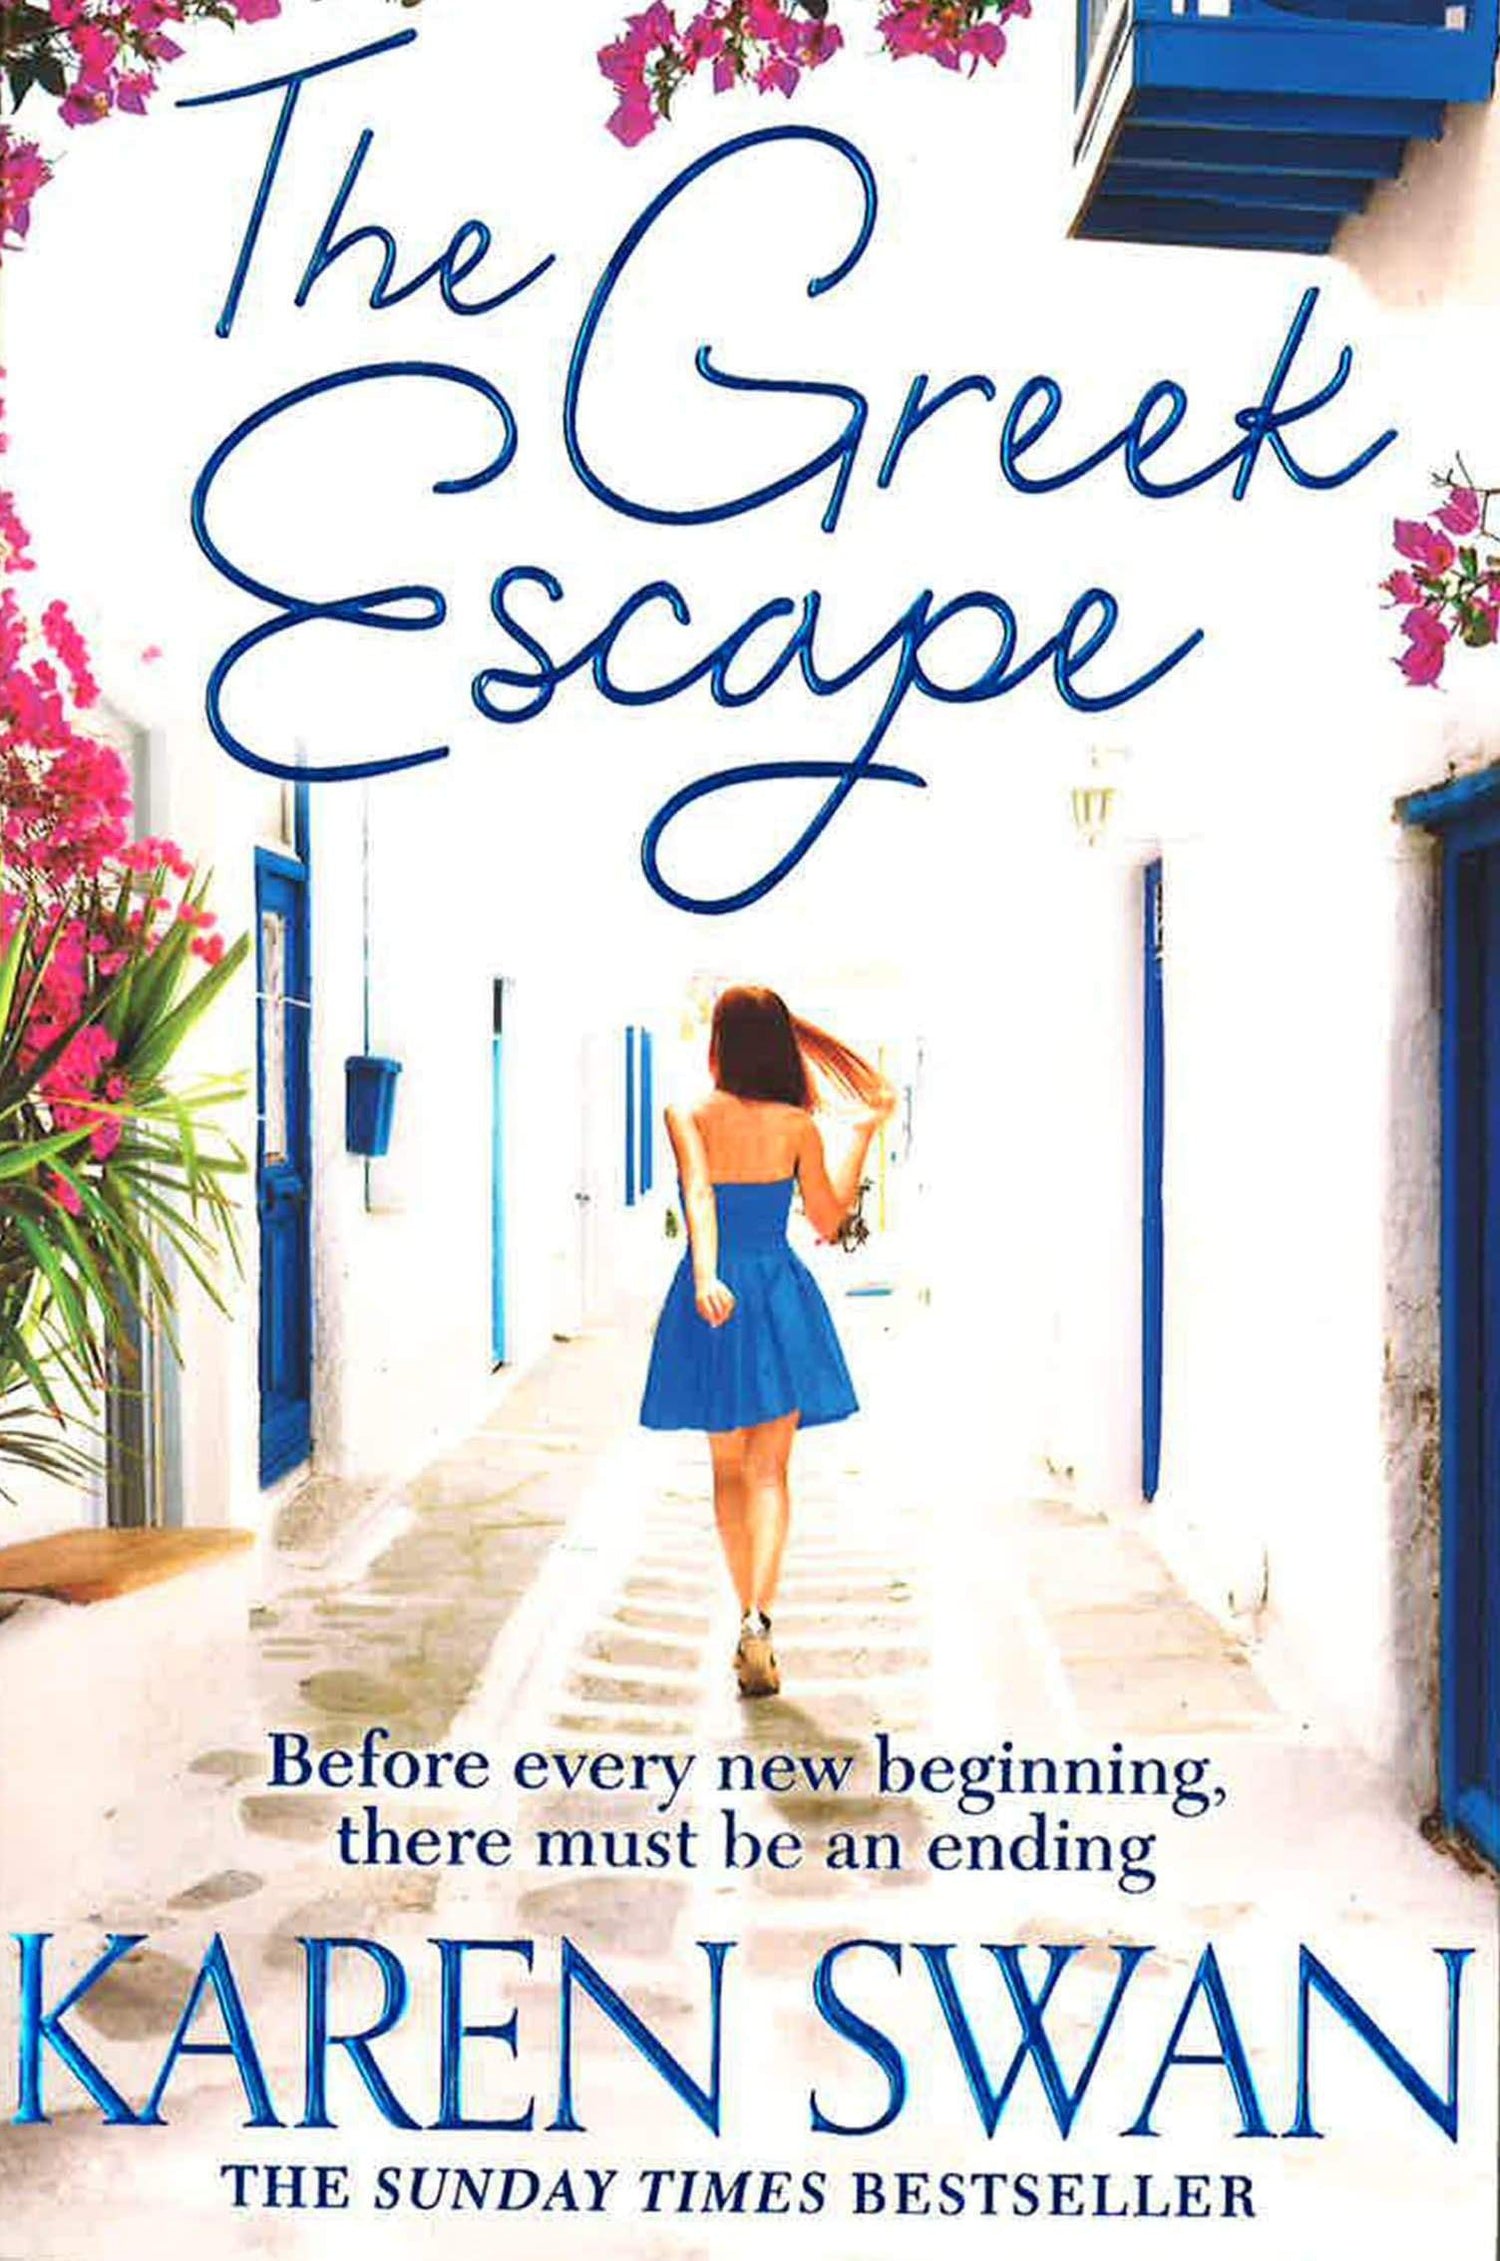 The Greek Escape